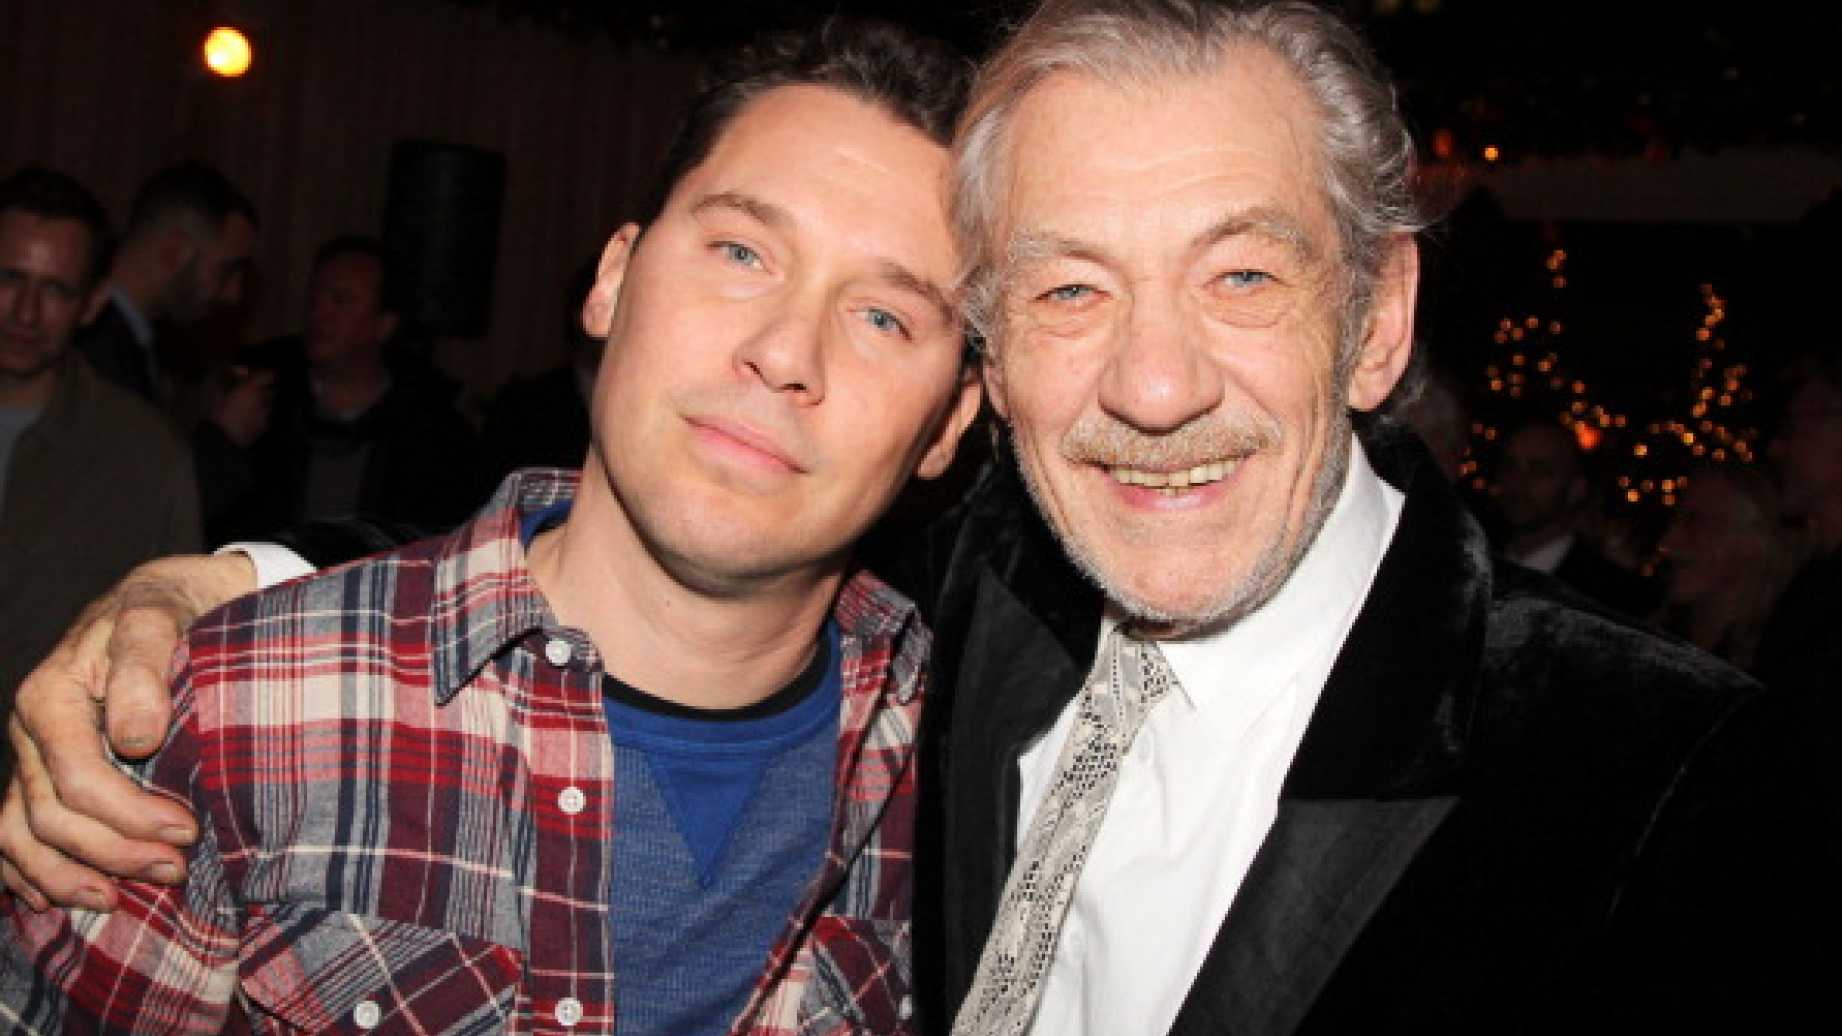 Ian McKellen, o Magneto, comenta sobre acusações de abuso sexual contra Bryan Singer, diretor de X-Men